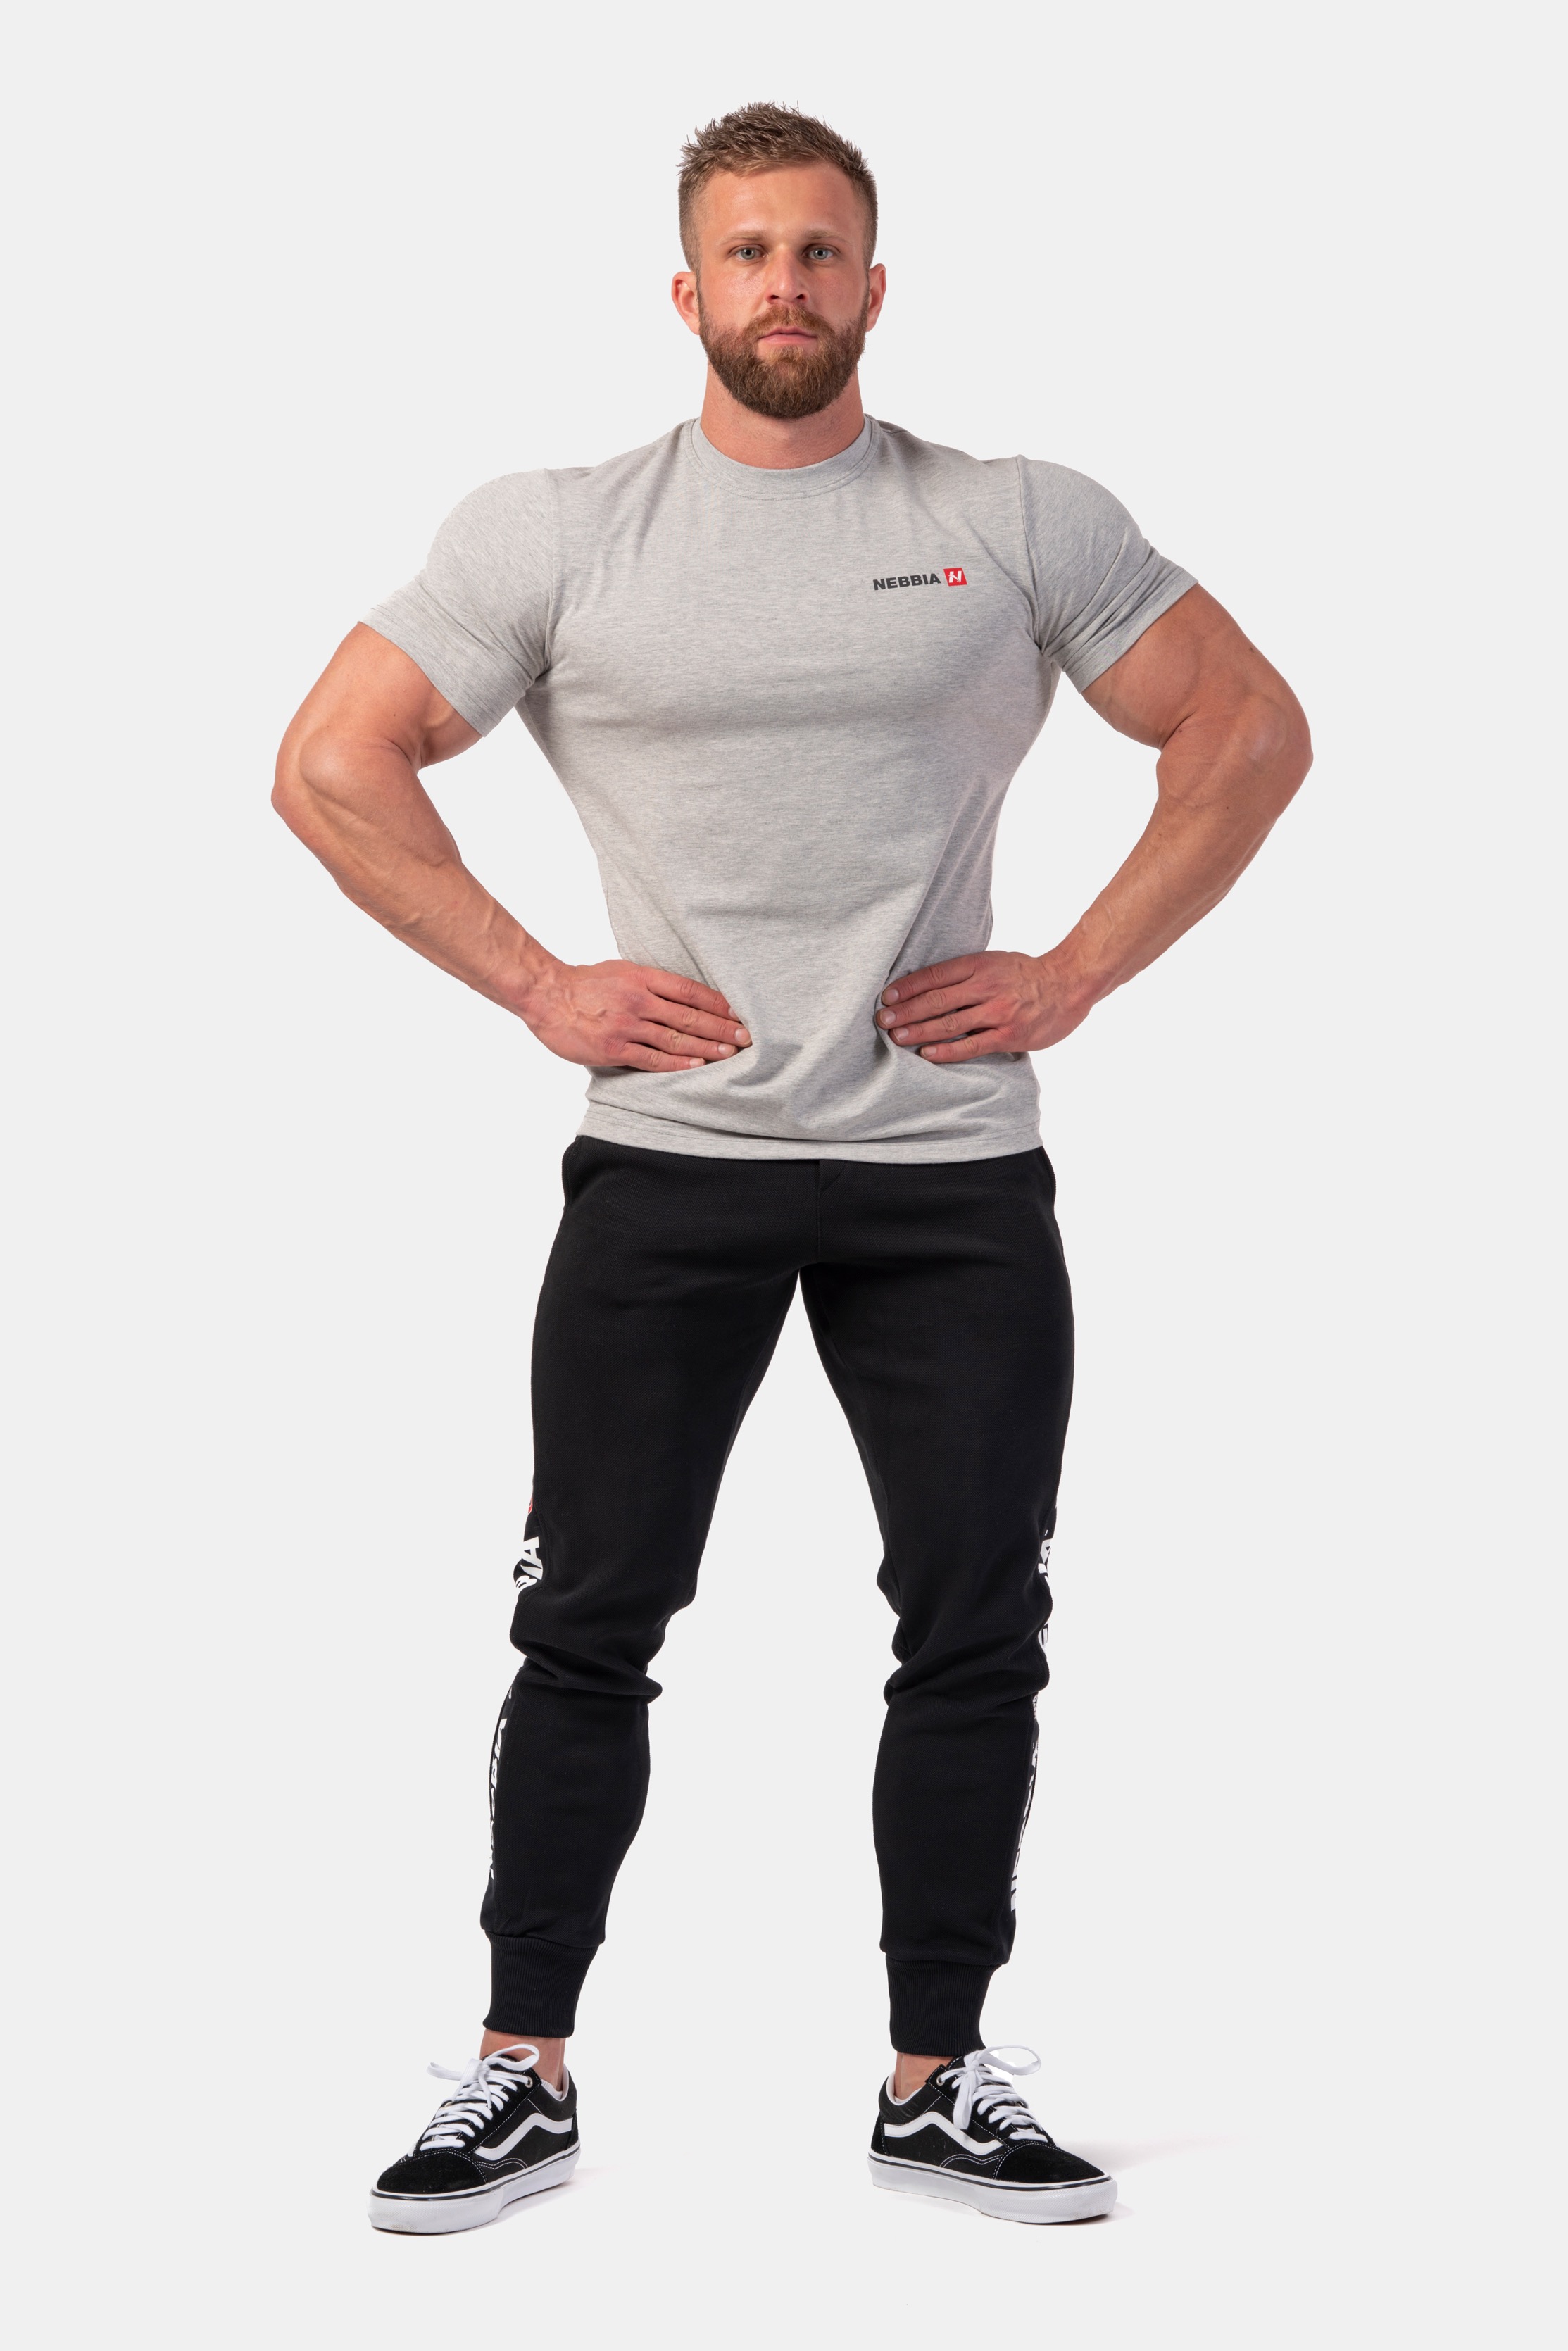 nebbia-ferfi-fitness-polo-minimalist-logo-291-light-grey